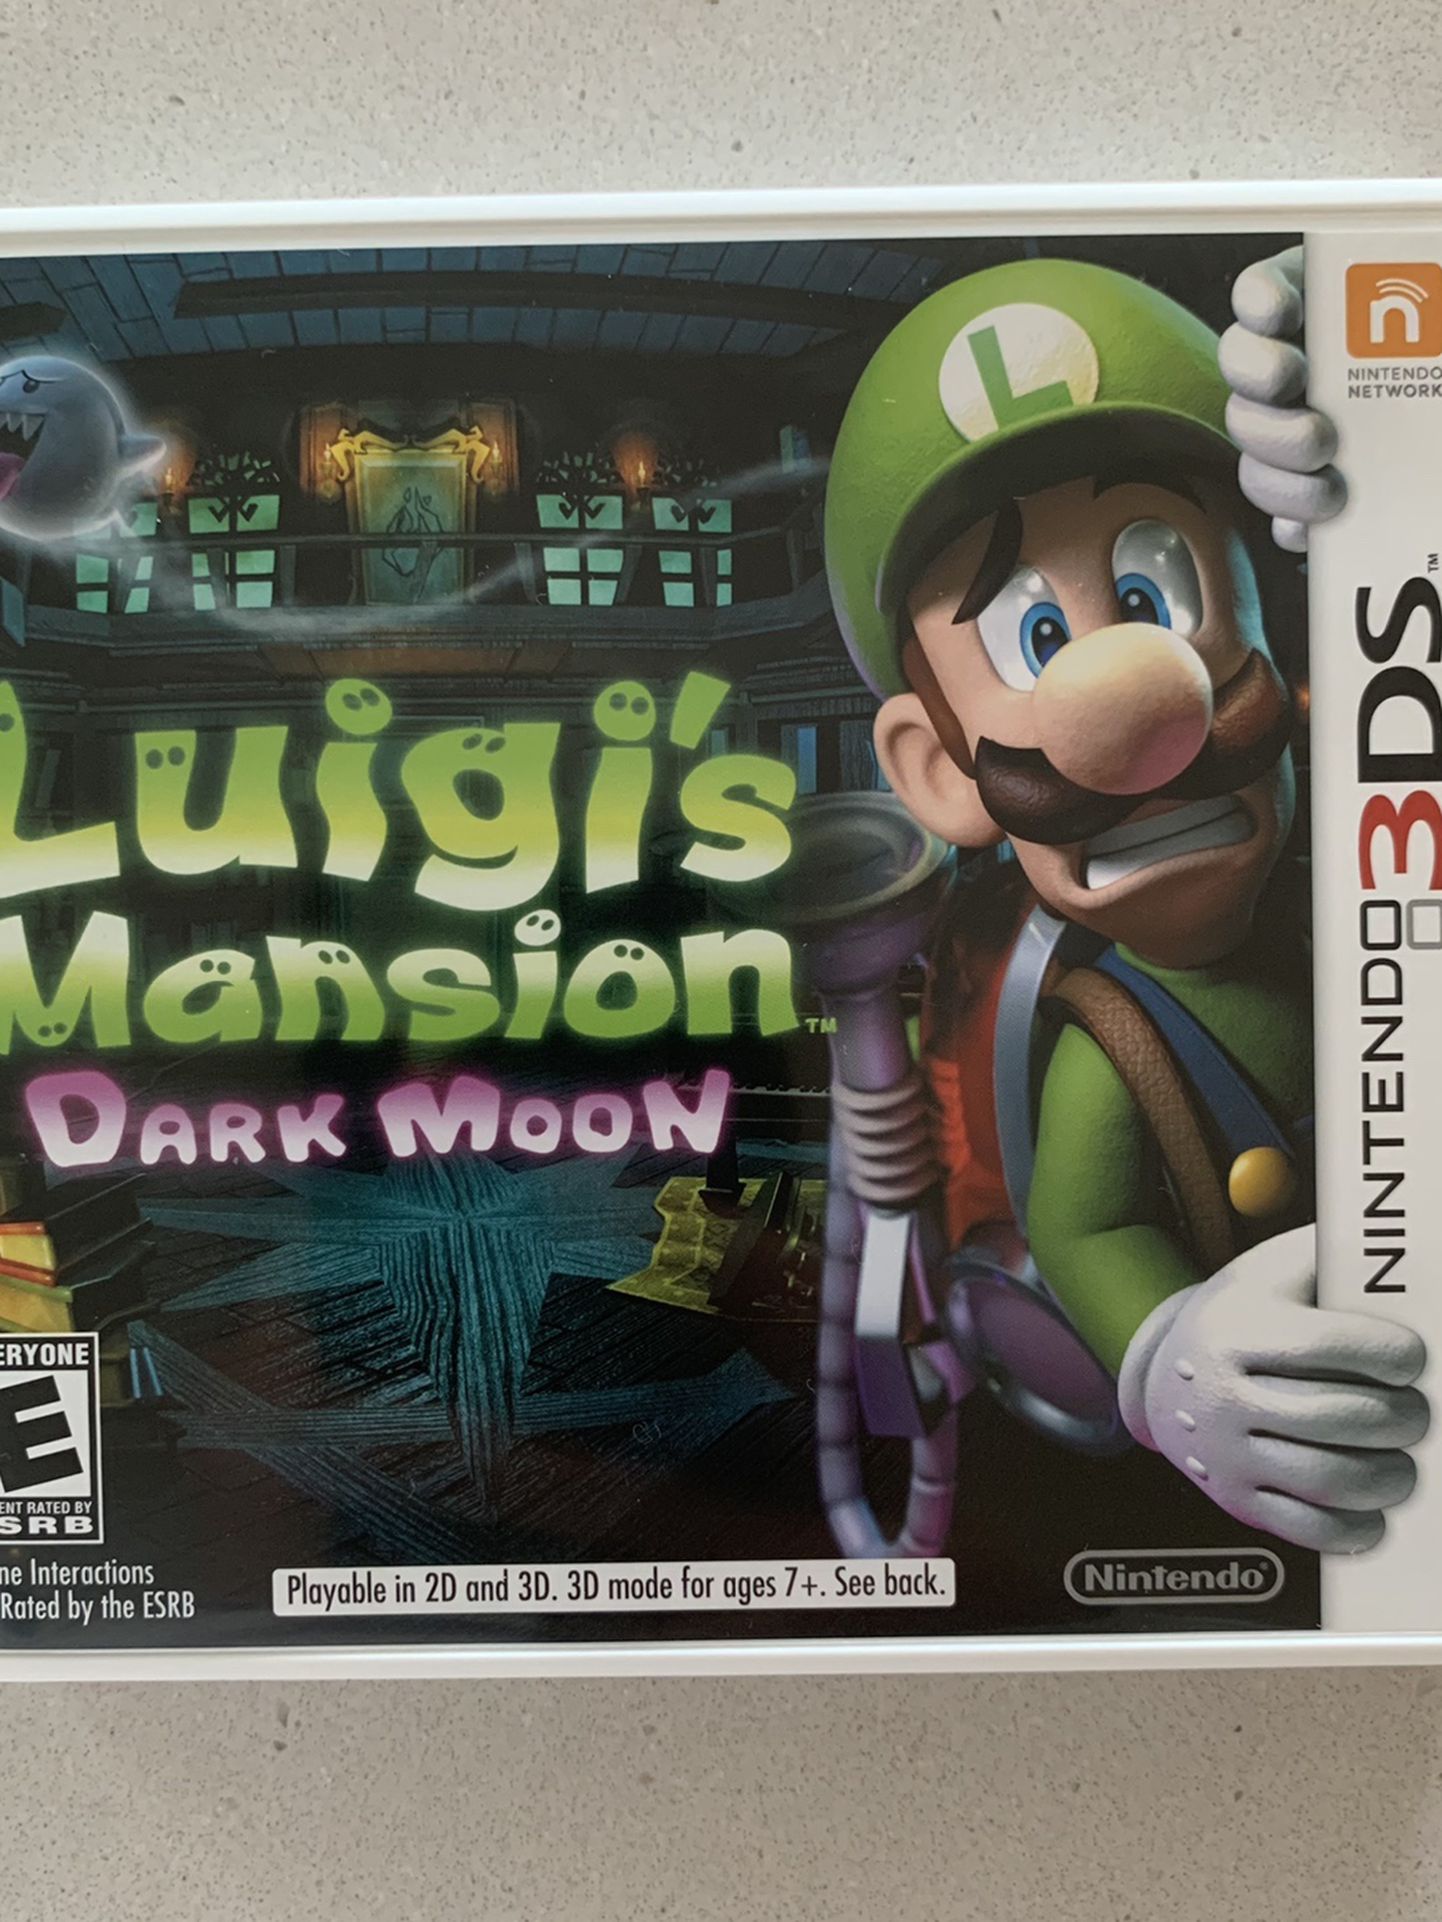 Nintendo 3DS Game: Luigis Mansion “Dark Noon”